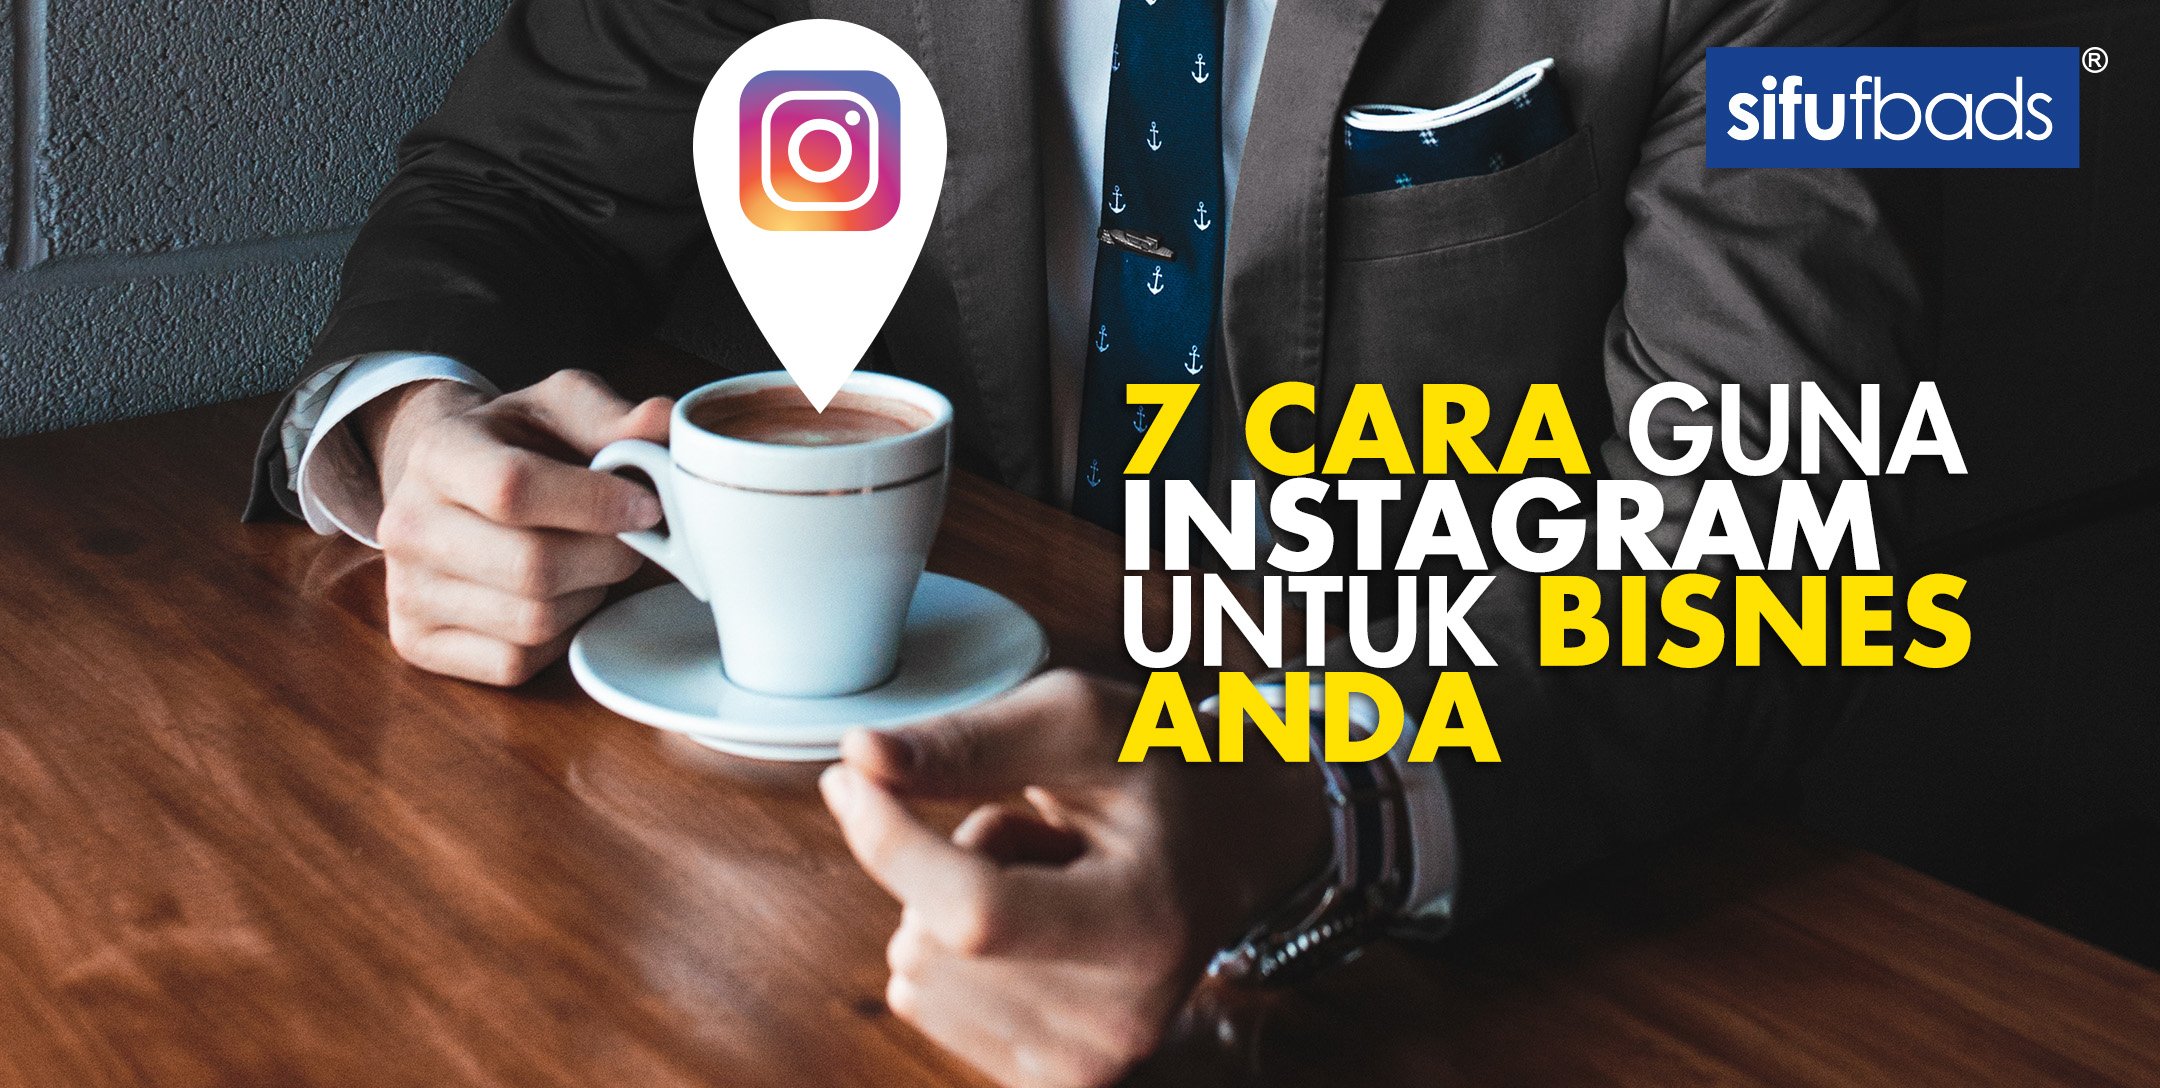 7 Cara Simple ‘Bina’ Instagram Untuk Bisnes Anda